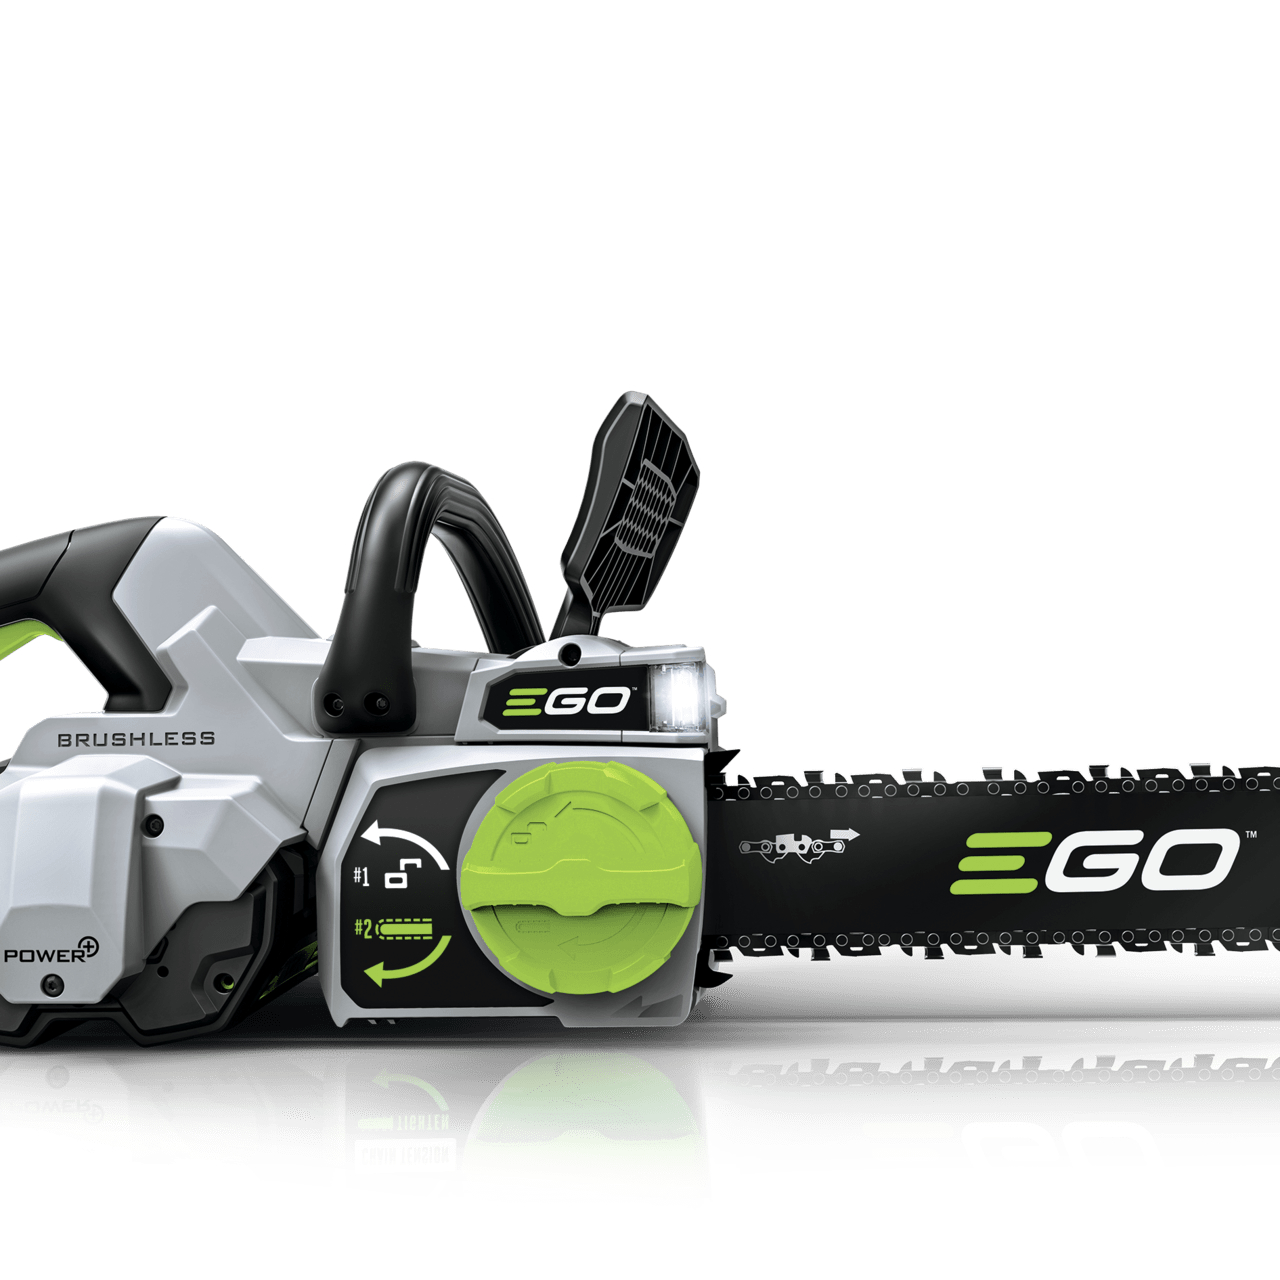 ego-cs1800e-45cm-chainsaw-bare-tool